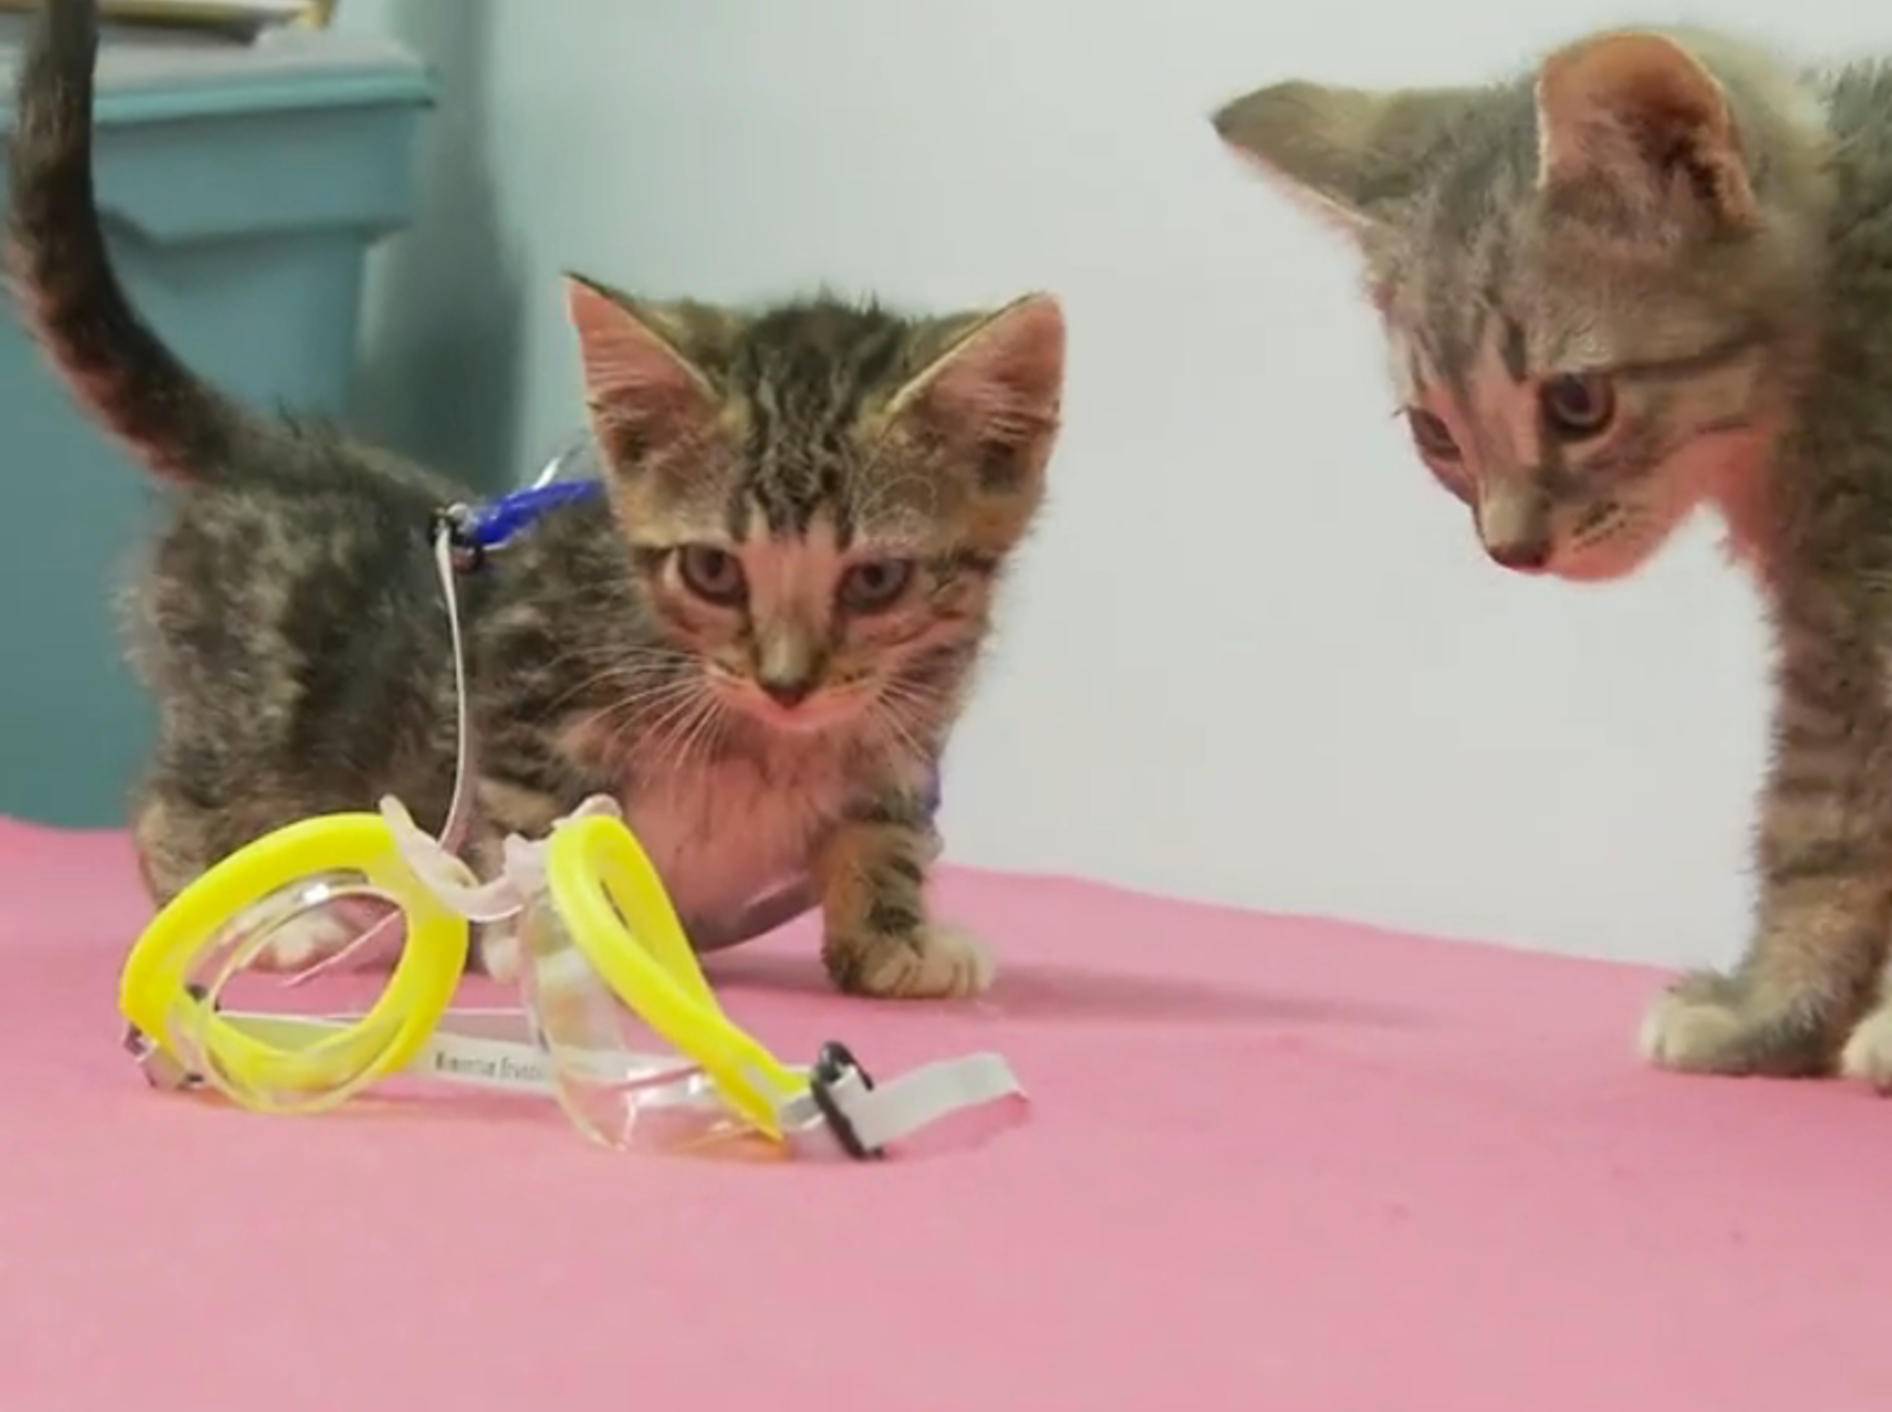 Süße Kätzchen: "Taucherbrillen sind cool!" – Bild: YouTube / The Pet Collective